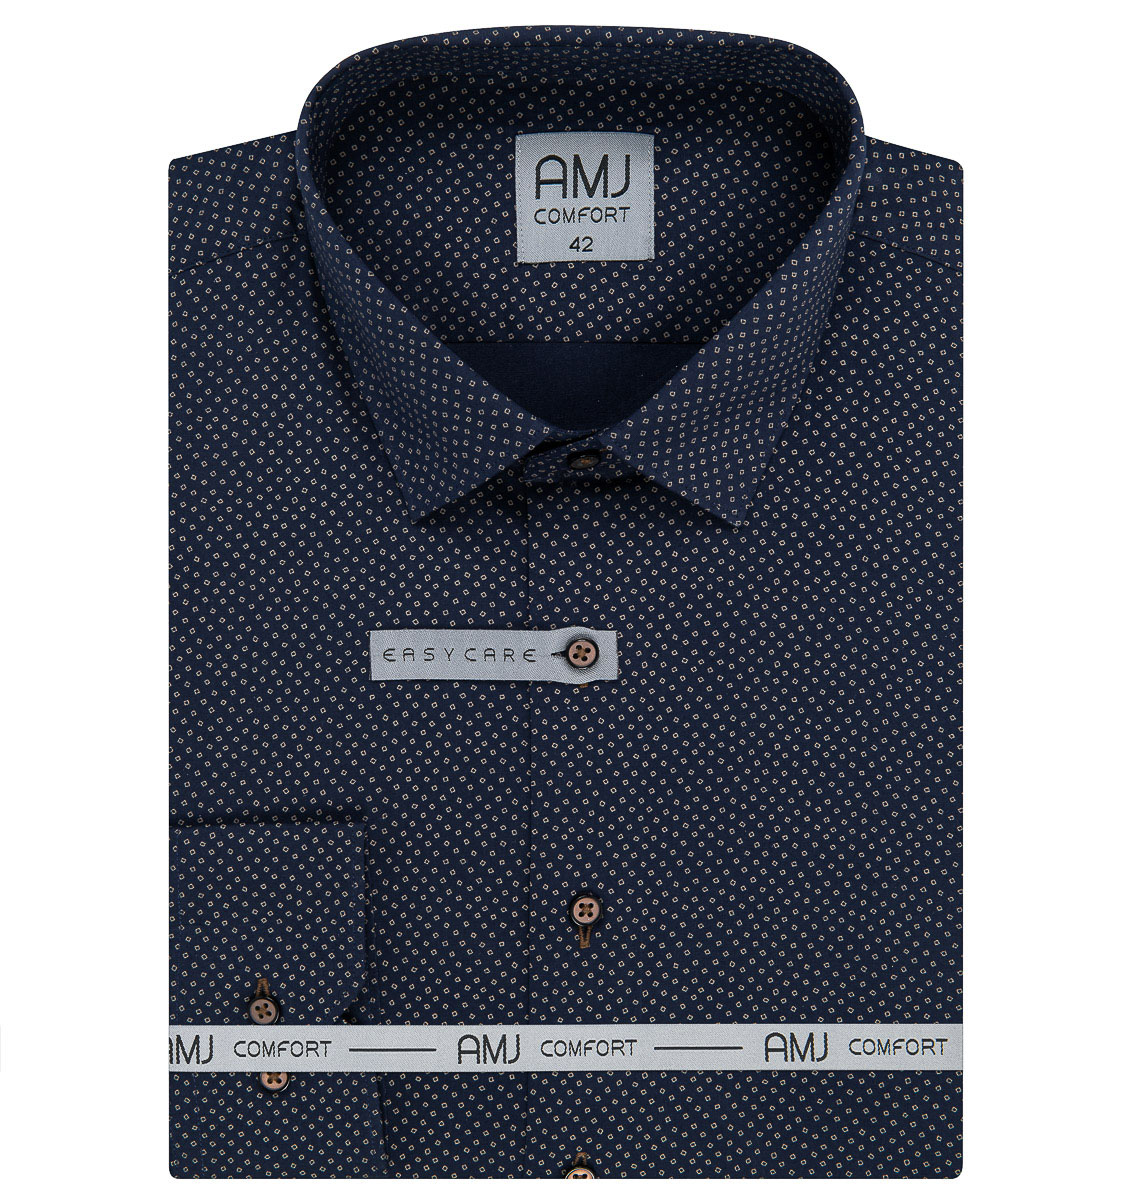 Pánská košile AMJ bavlněná, modrá s kostkami VDB1214, dlouhý rukáv (regular + slim-fit)